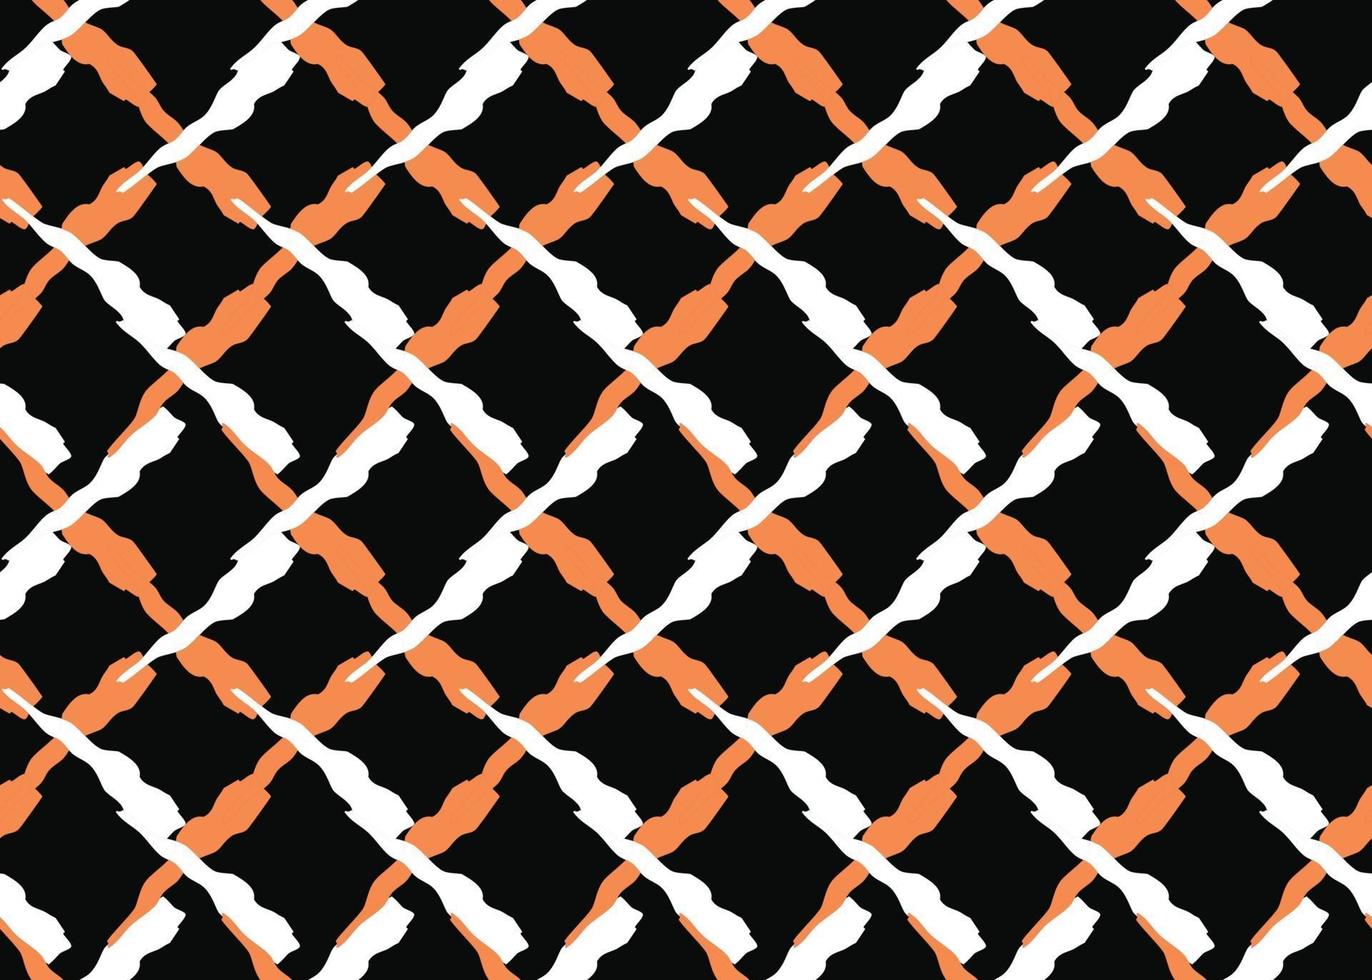 Vektor Textur Hintergrund, nahtloses Muster. handgezeichnete, orange, schwarz, weiße Farben.